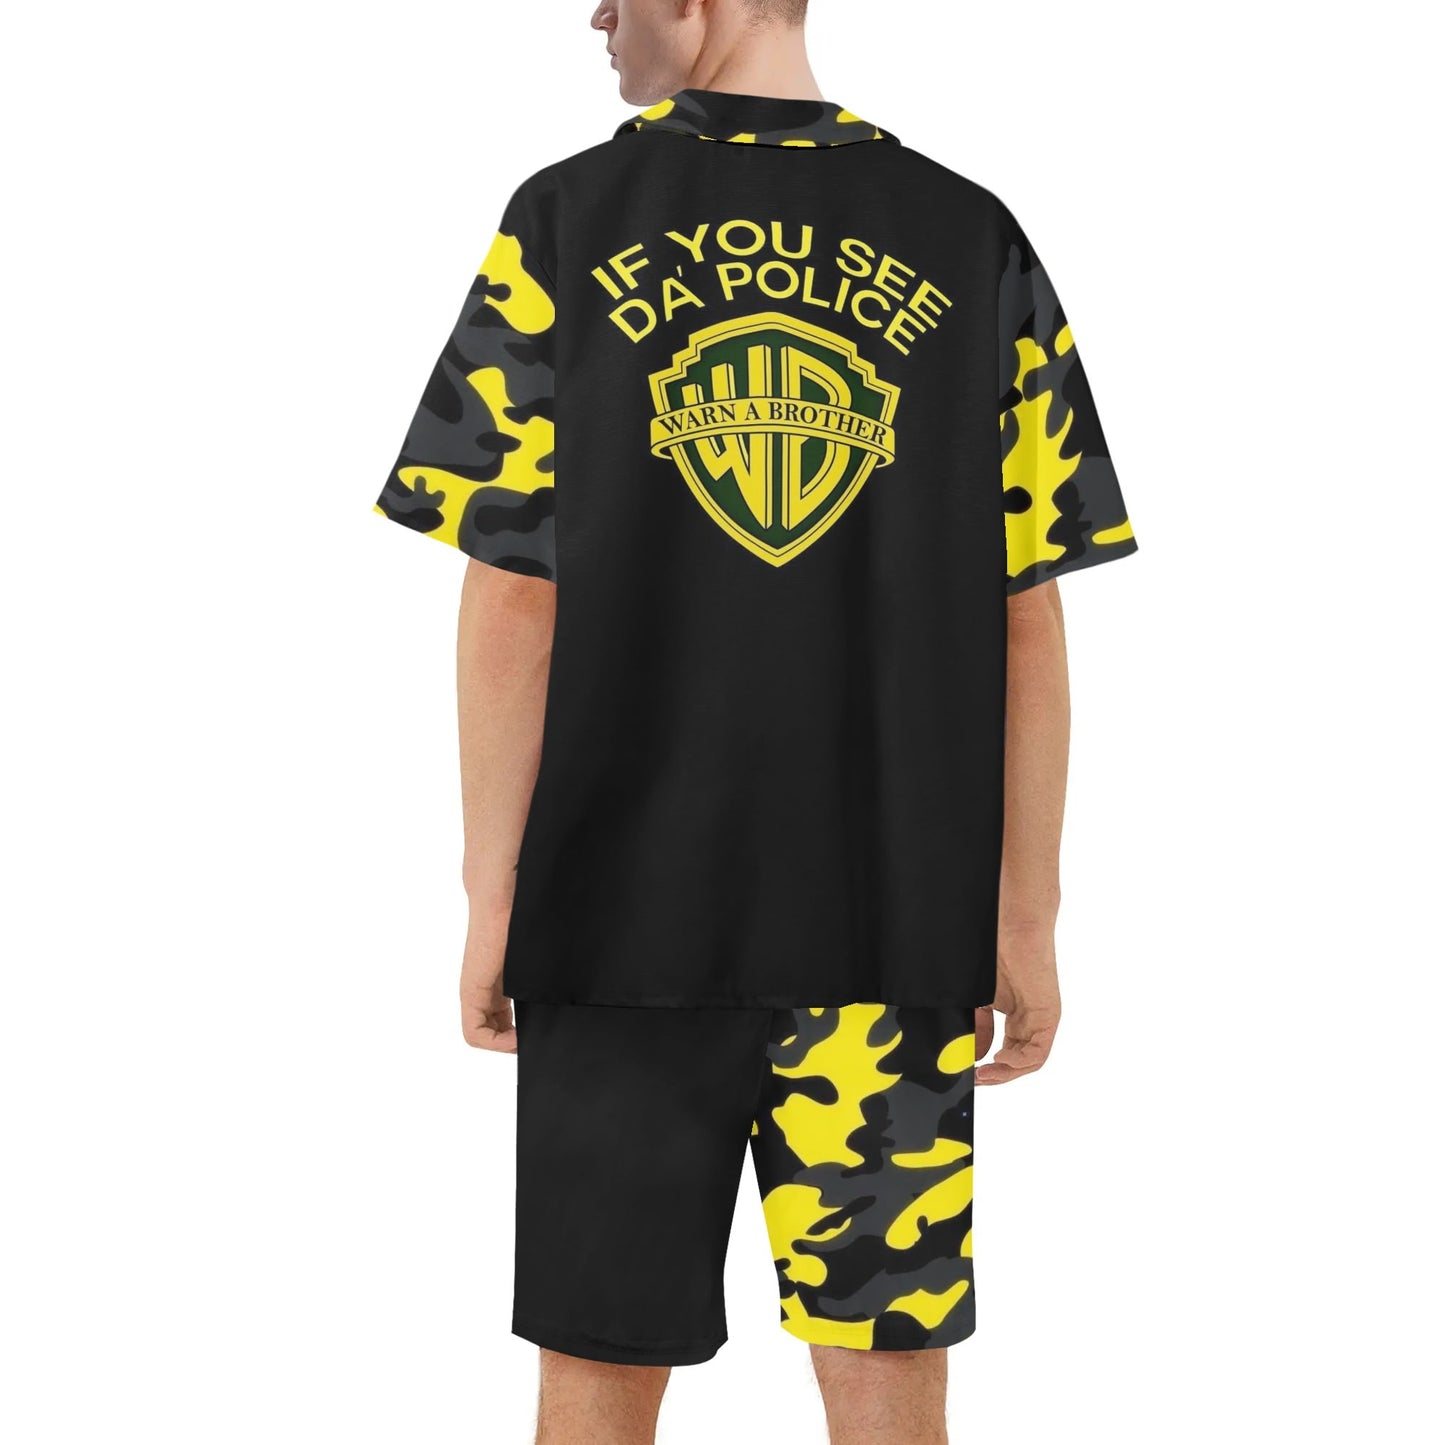 Mens Regular Fit Warn A Brotha Hawaiian Short Sleeve Shirt and Shorts Set